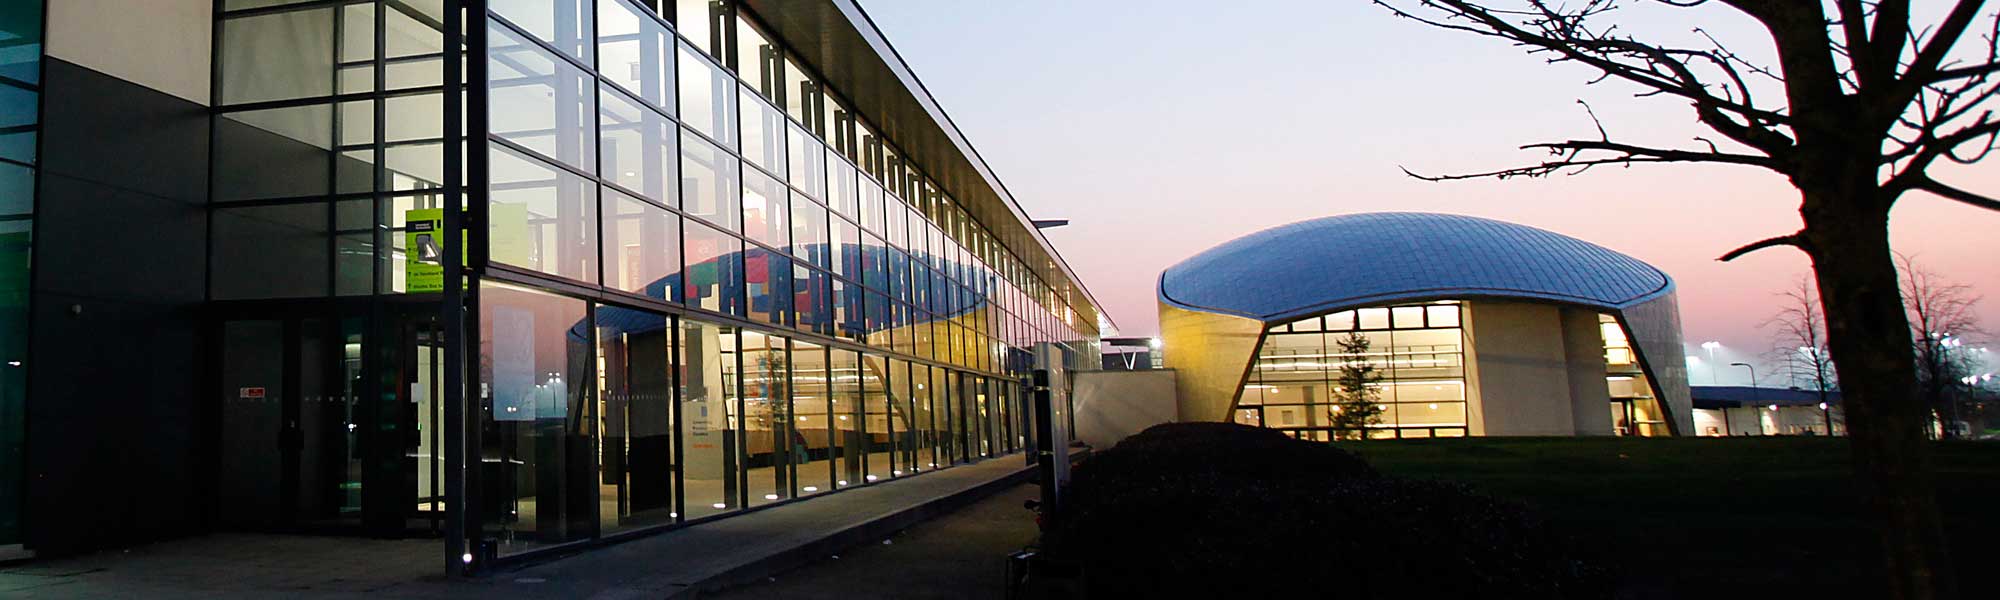 The Weston Auditorium, de Havilland campus